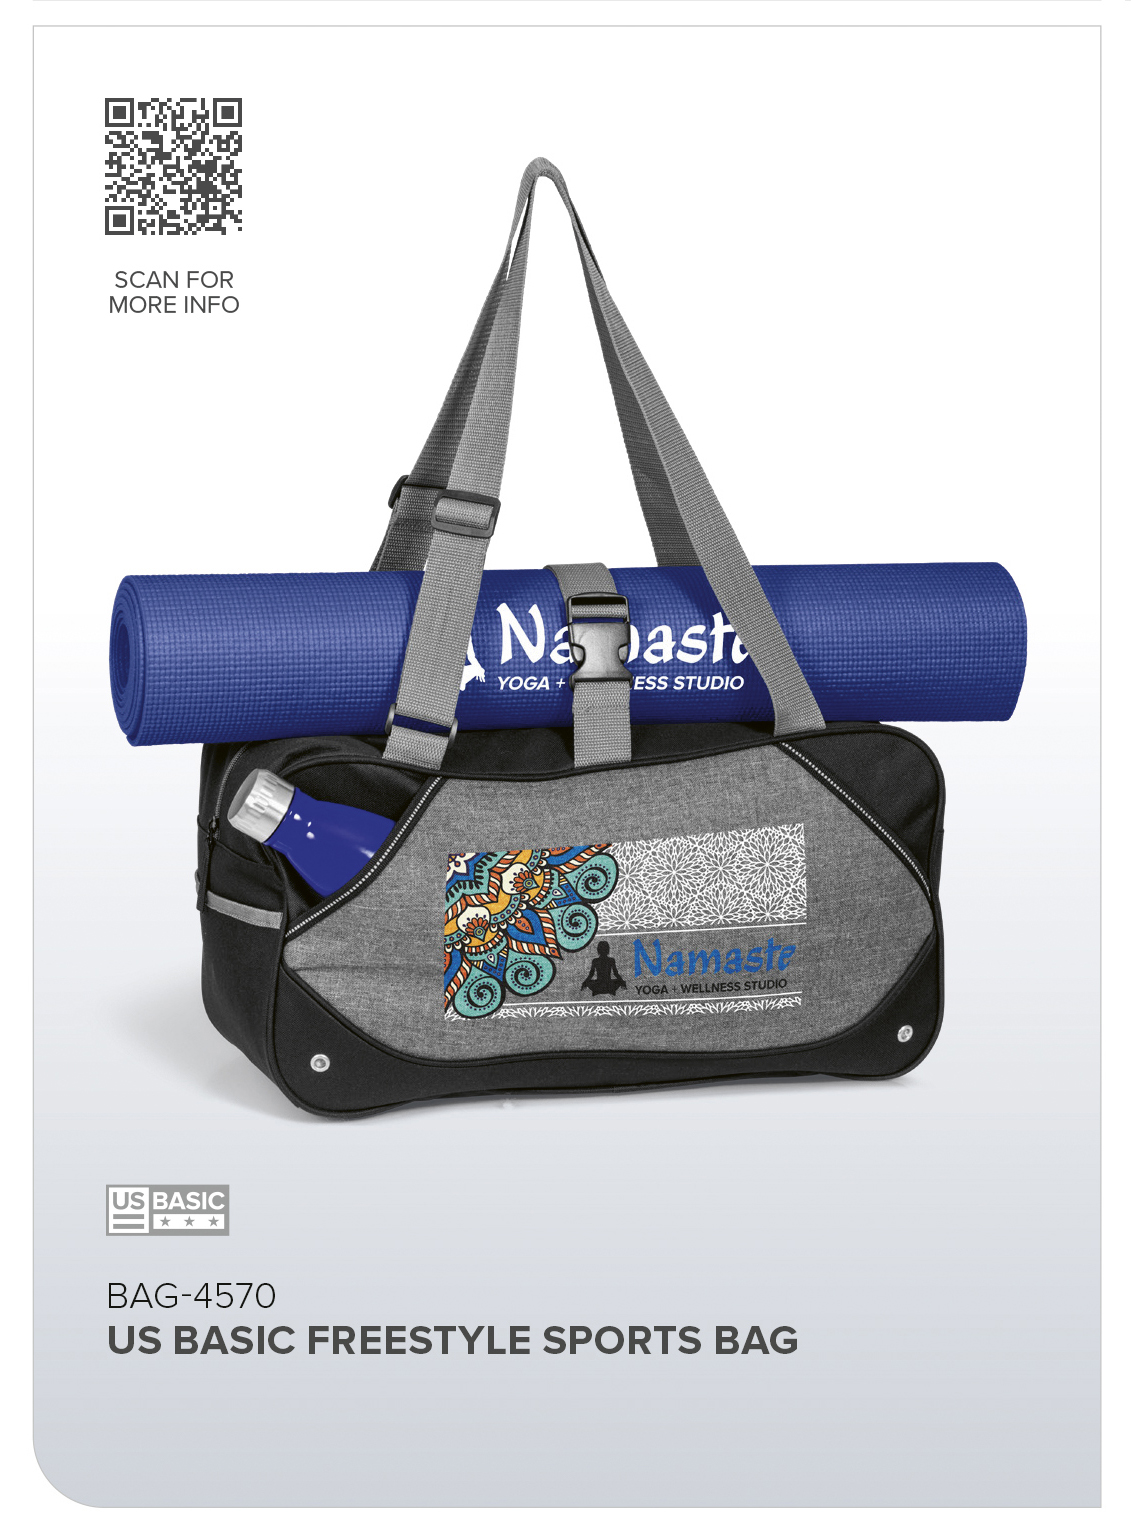 US Basic Freestyle Sports Bag CATALOGUE_IMAGE